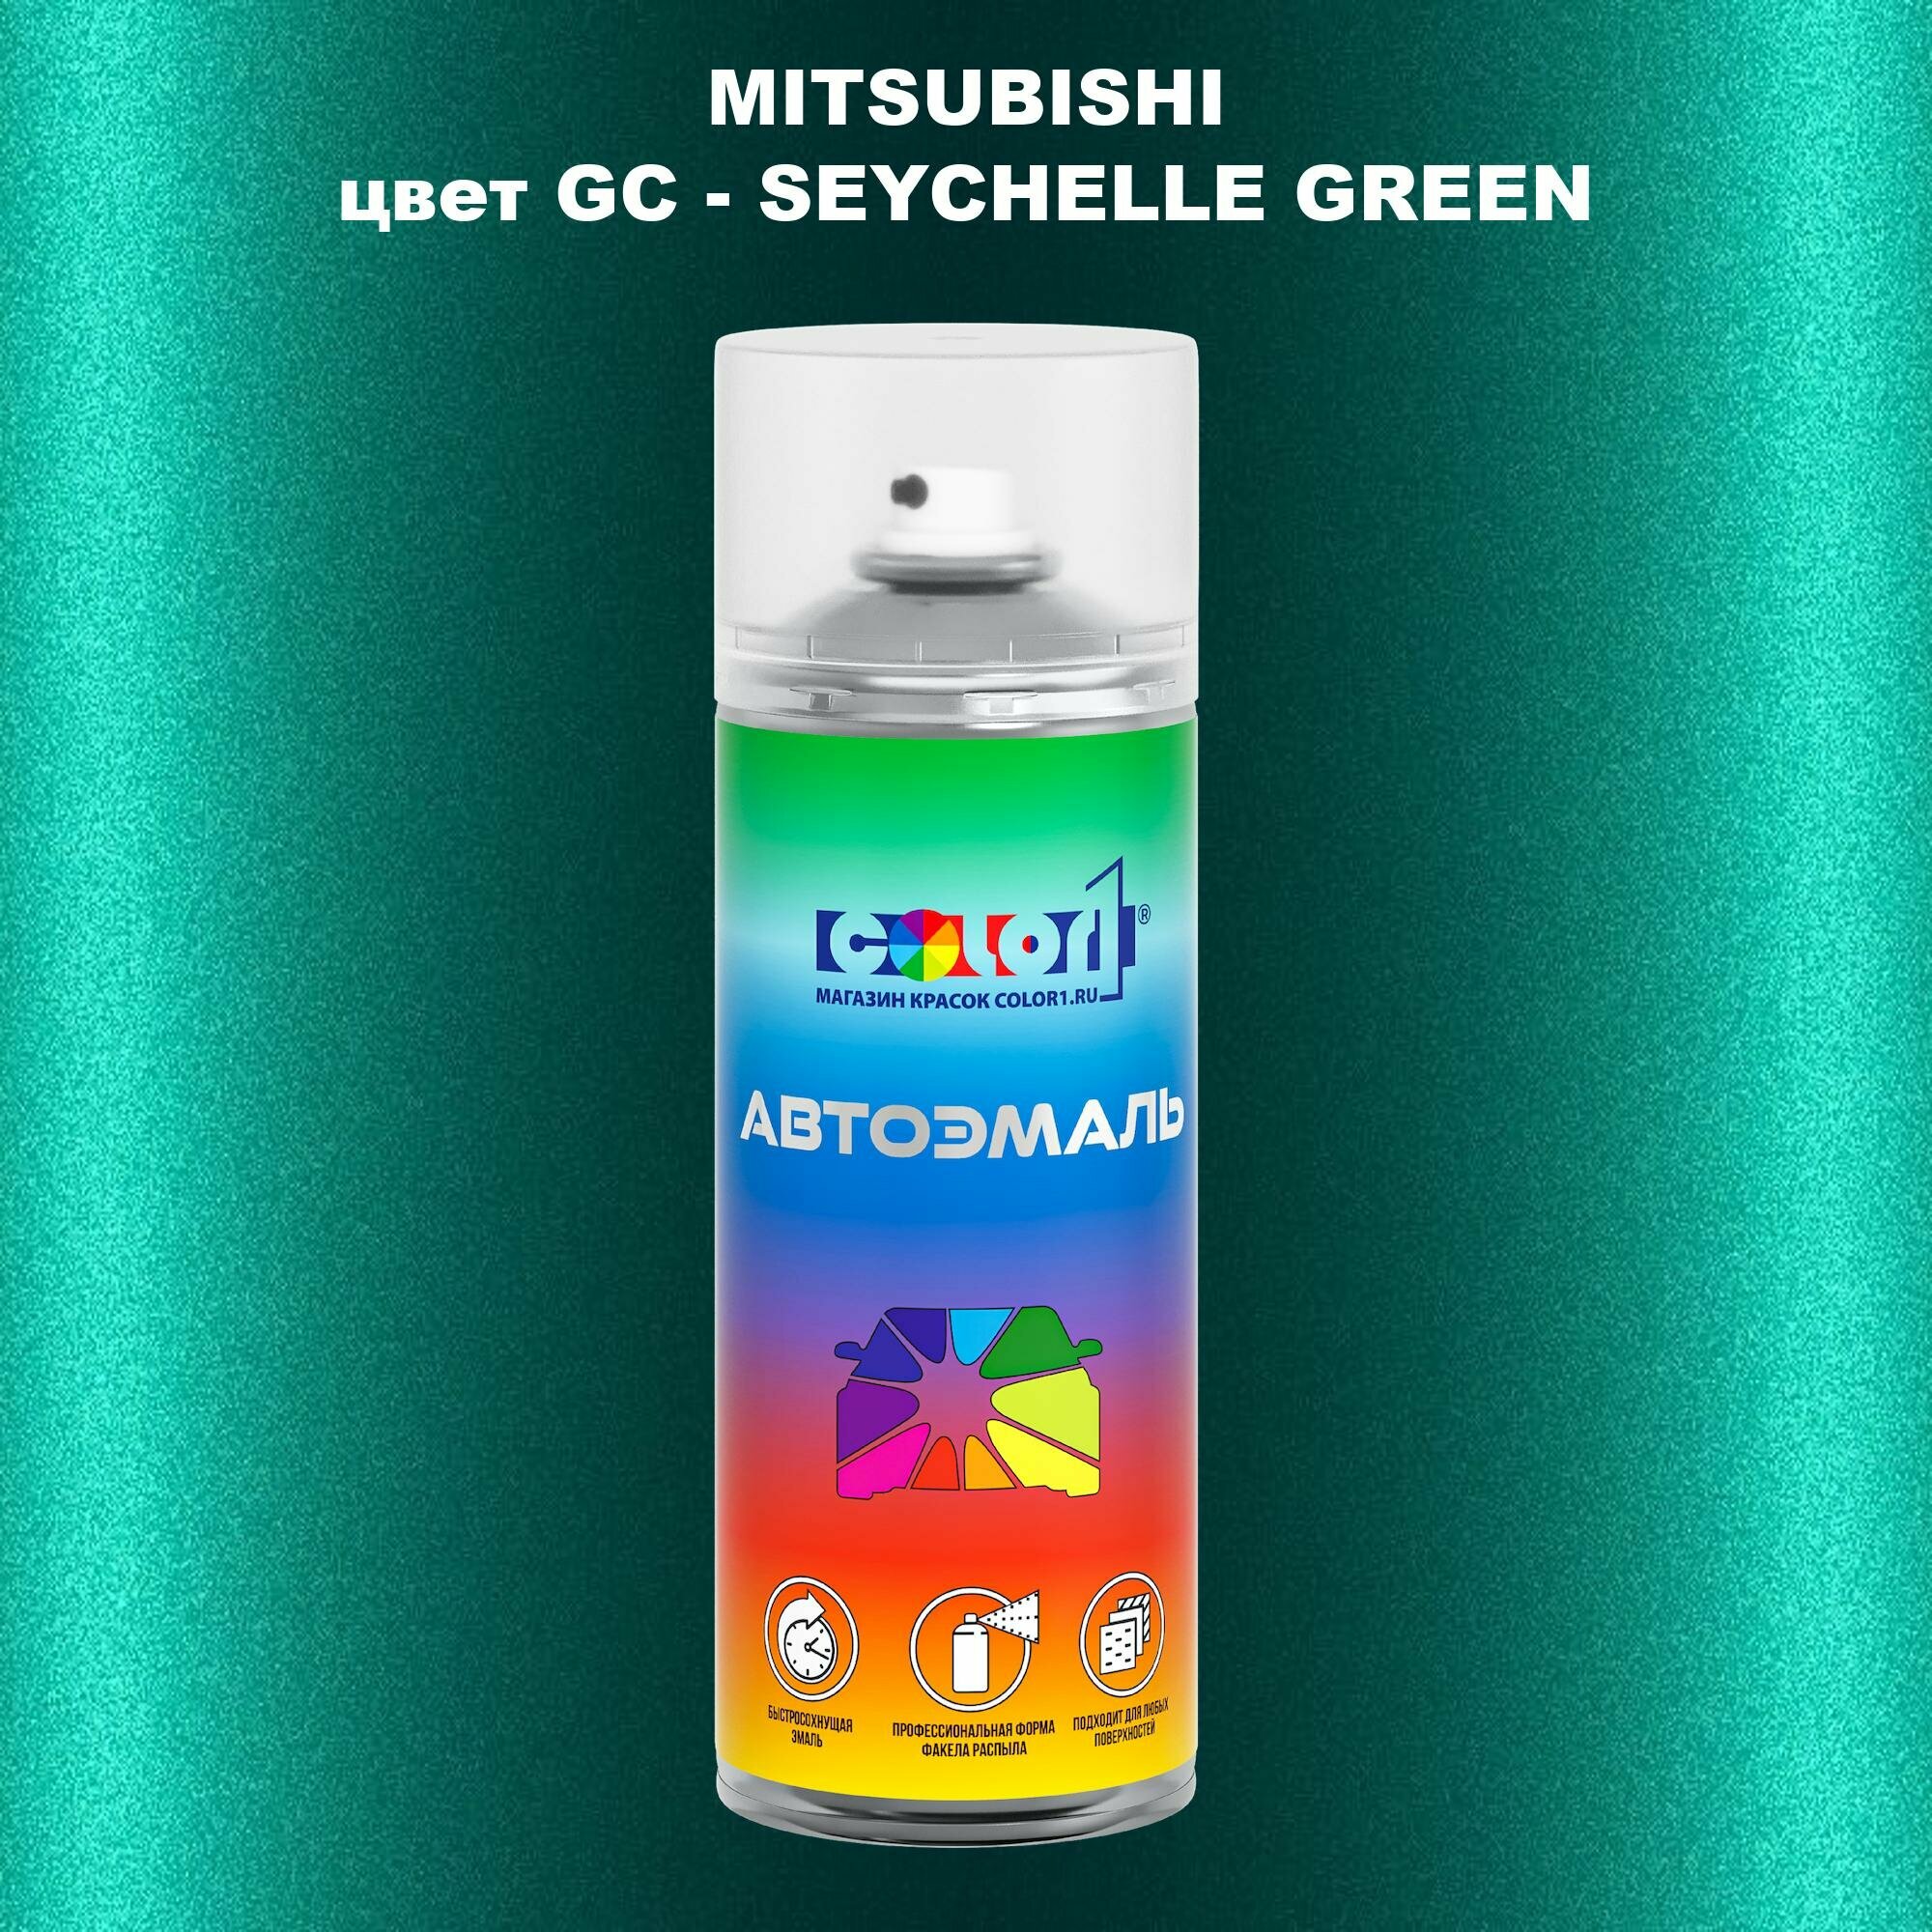 Аэрозольная краска COLOR1 для MITSUBISHI, цвет GC - SEYCHELLE GREEN